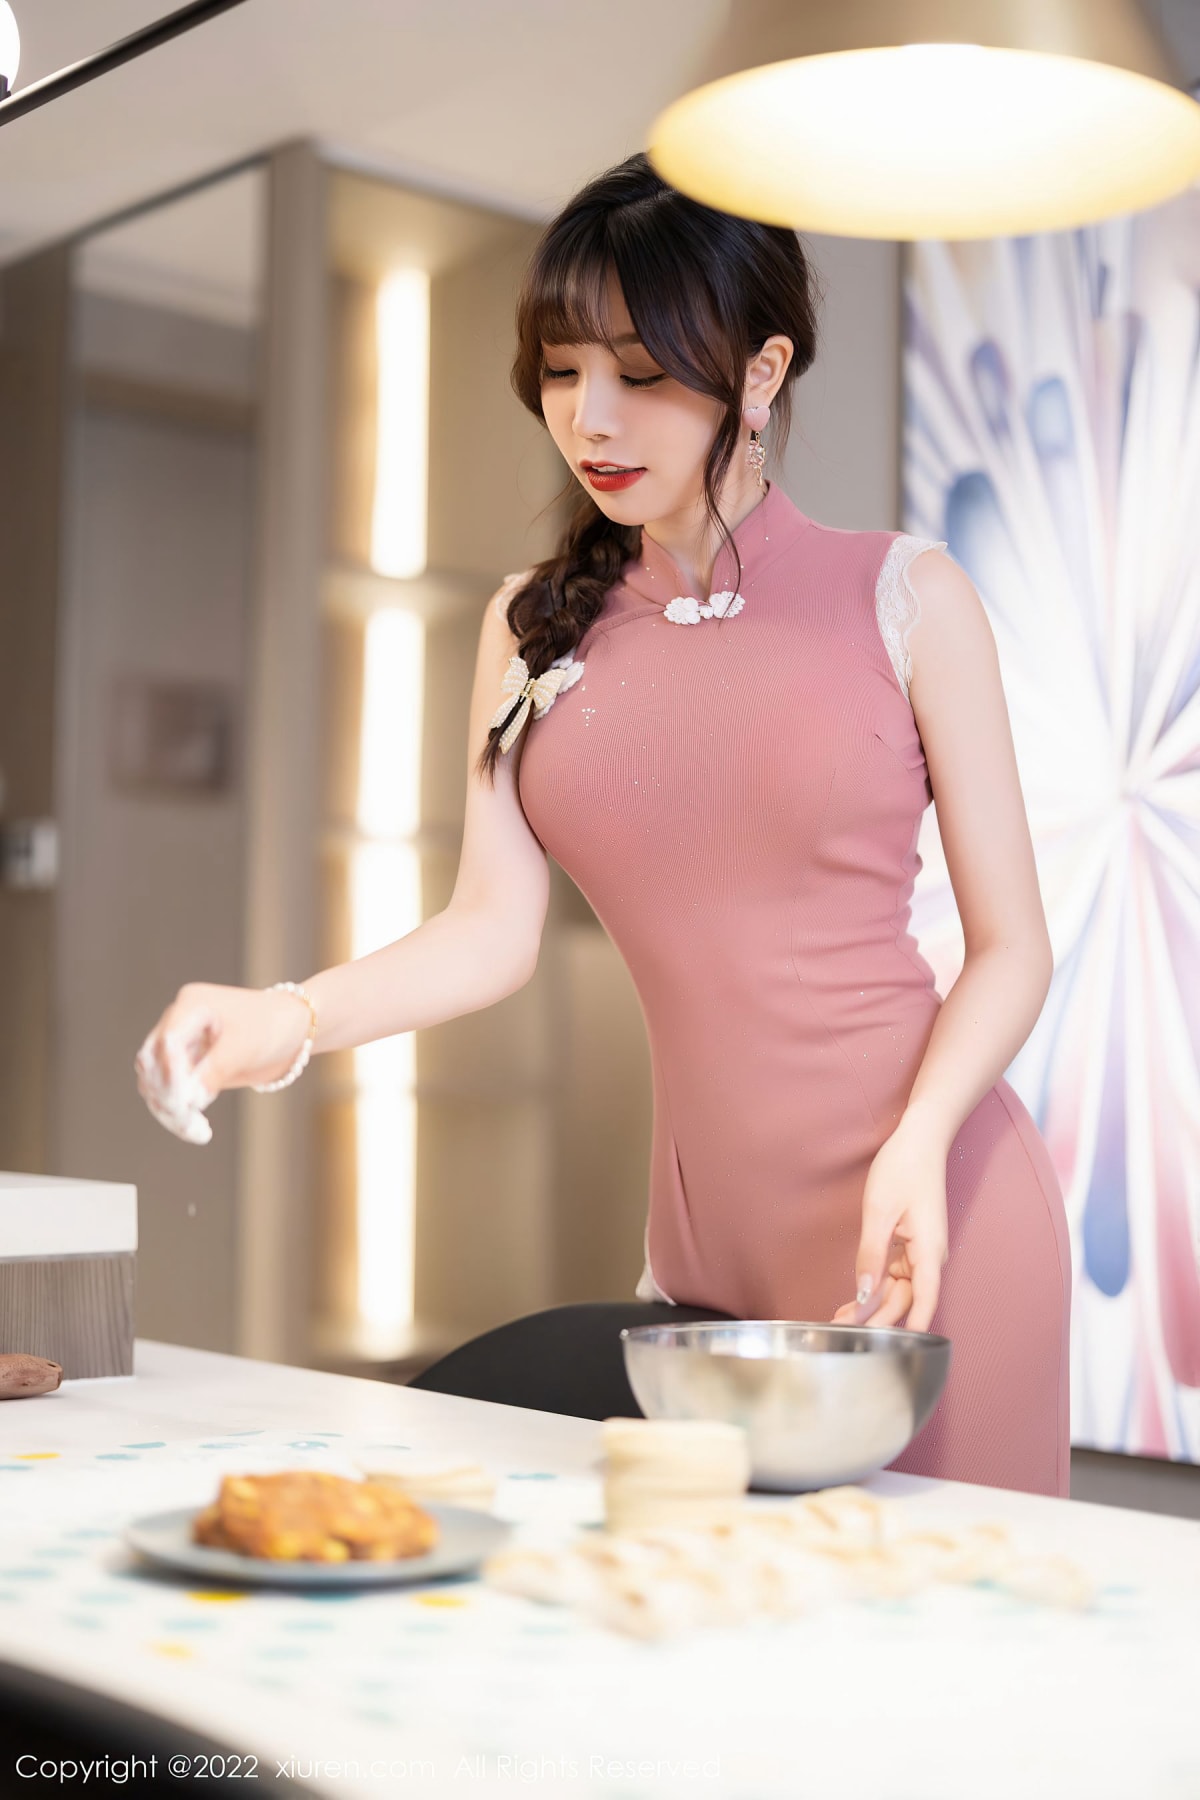 芝芝Booty - 厨娘角色+包饺子主题性感写真